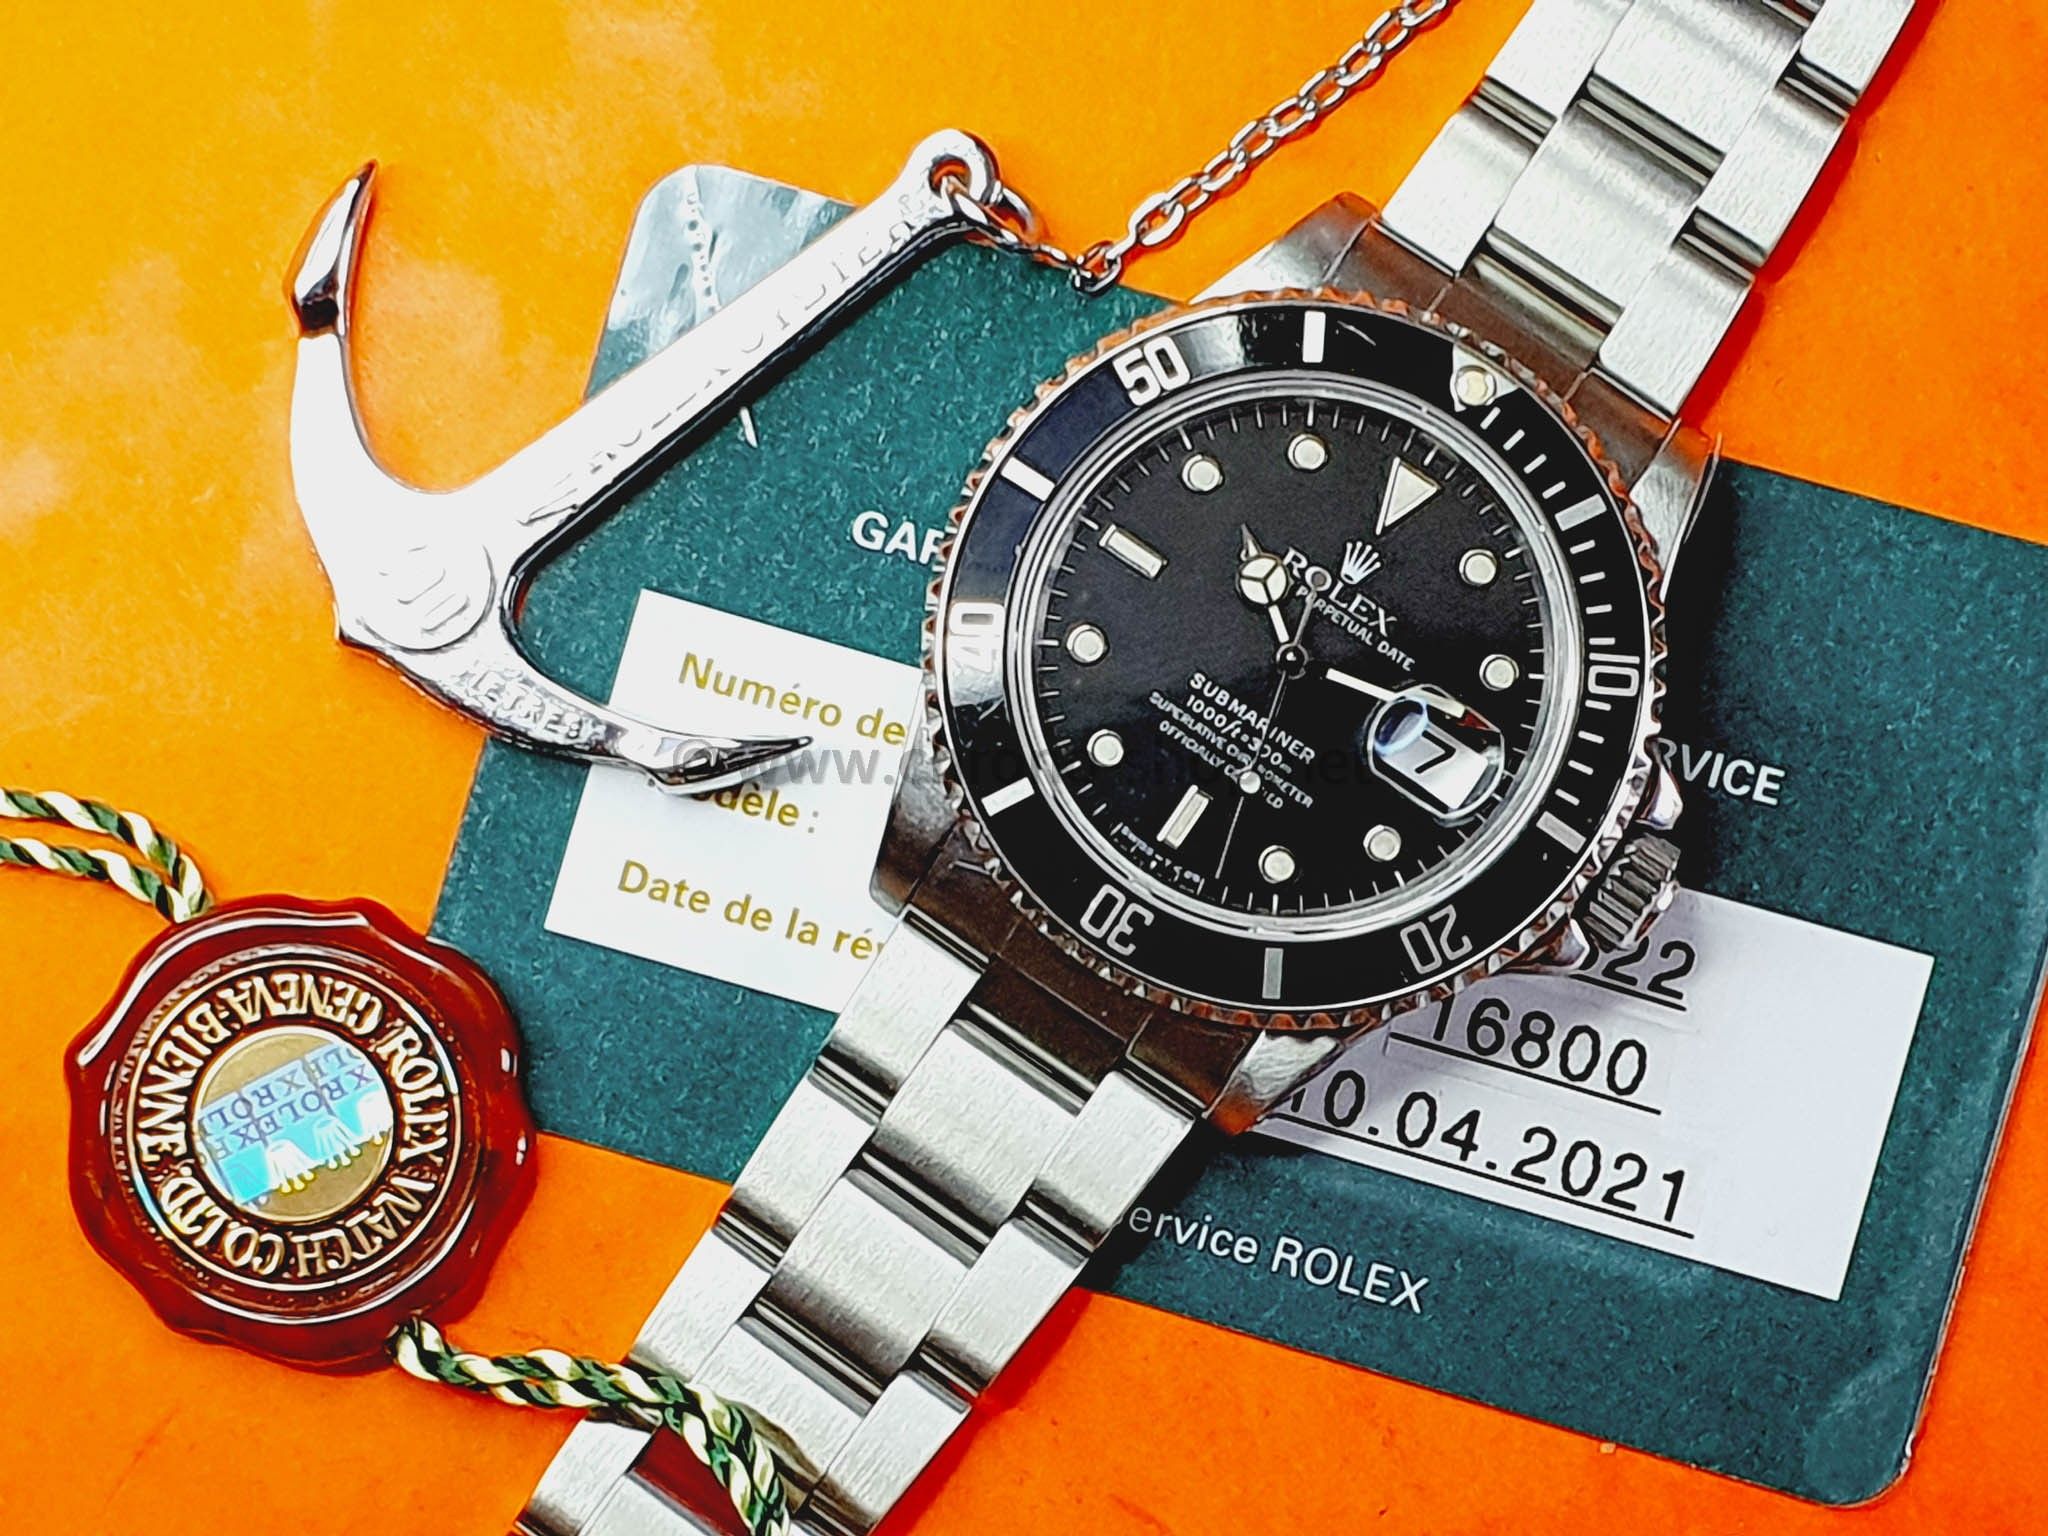 Rolex Mint Submariner 16800 Vintage Divers Watch Circa 1985 Rolex serviced 1 Year